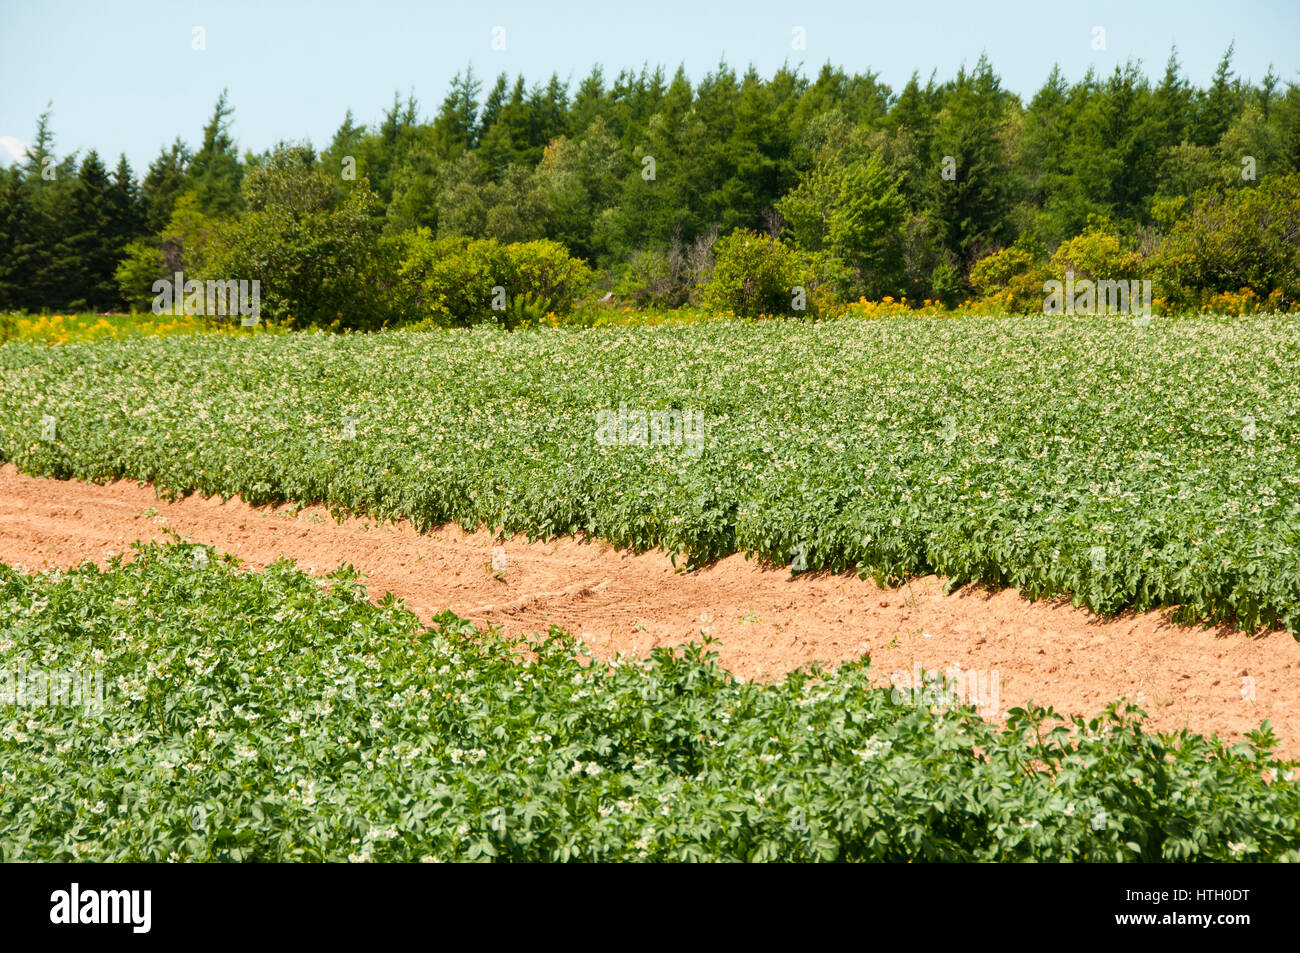 Plantation de pommes de terre - Prince Edward Island - Canada Banque D'Images